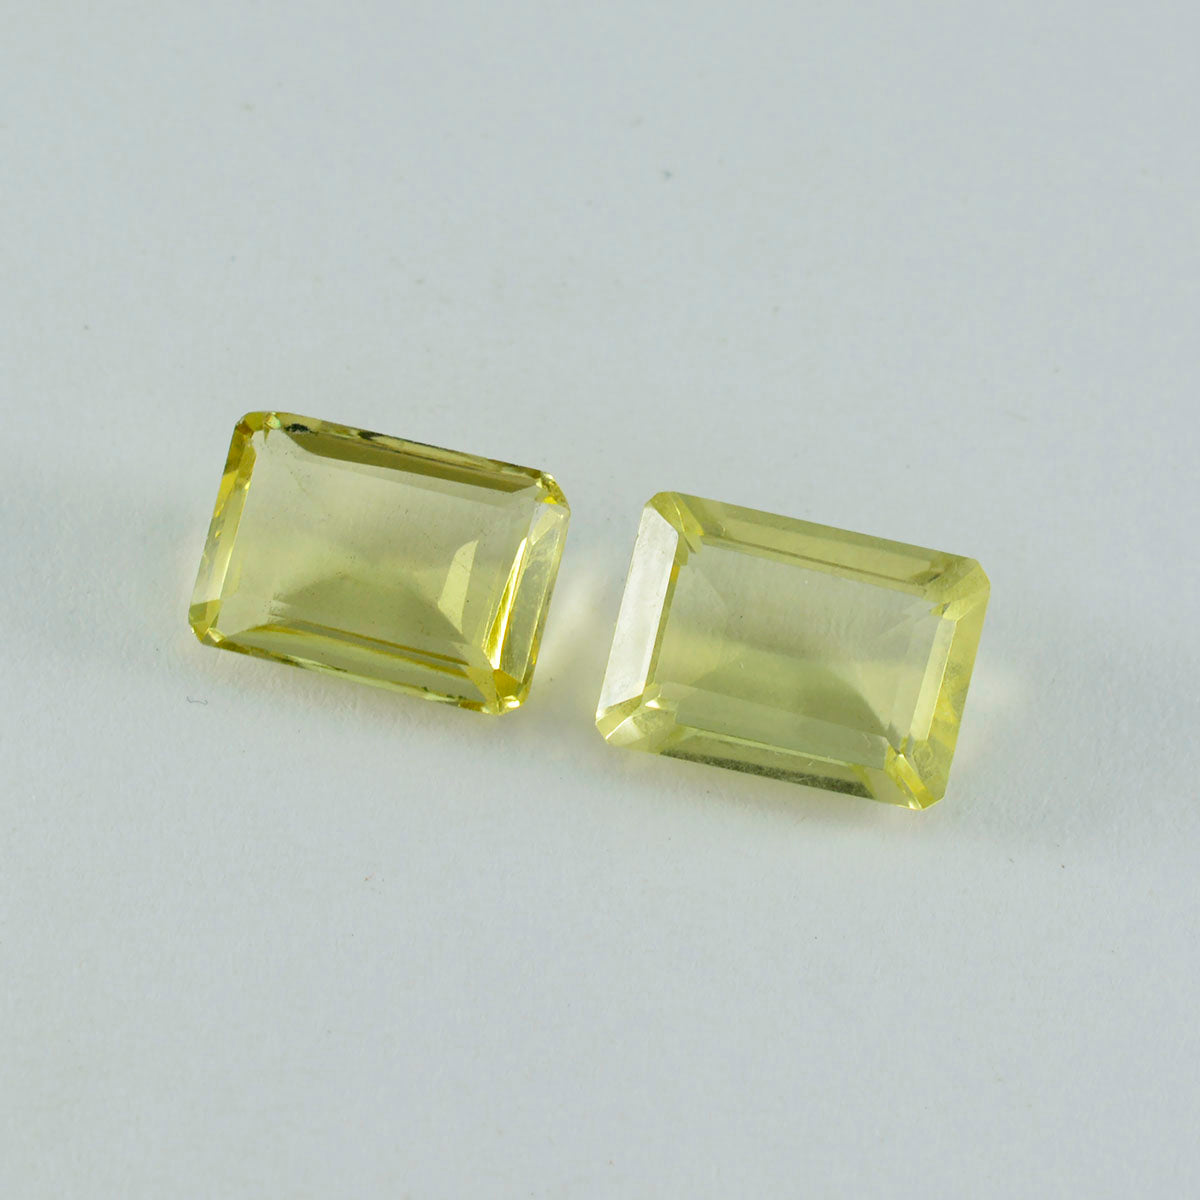 riyogems 1 шт., желтый лимонный кварц, граненые 12x16 мм, восьмиугольная форма, красивое качество, россыпь драгоценных камней